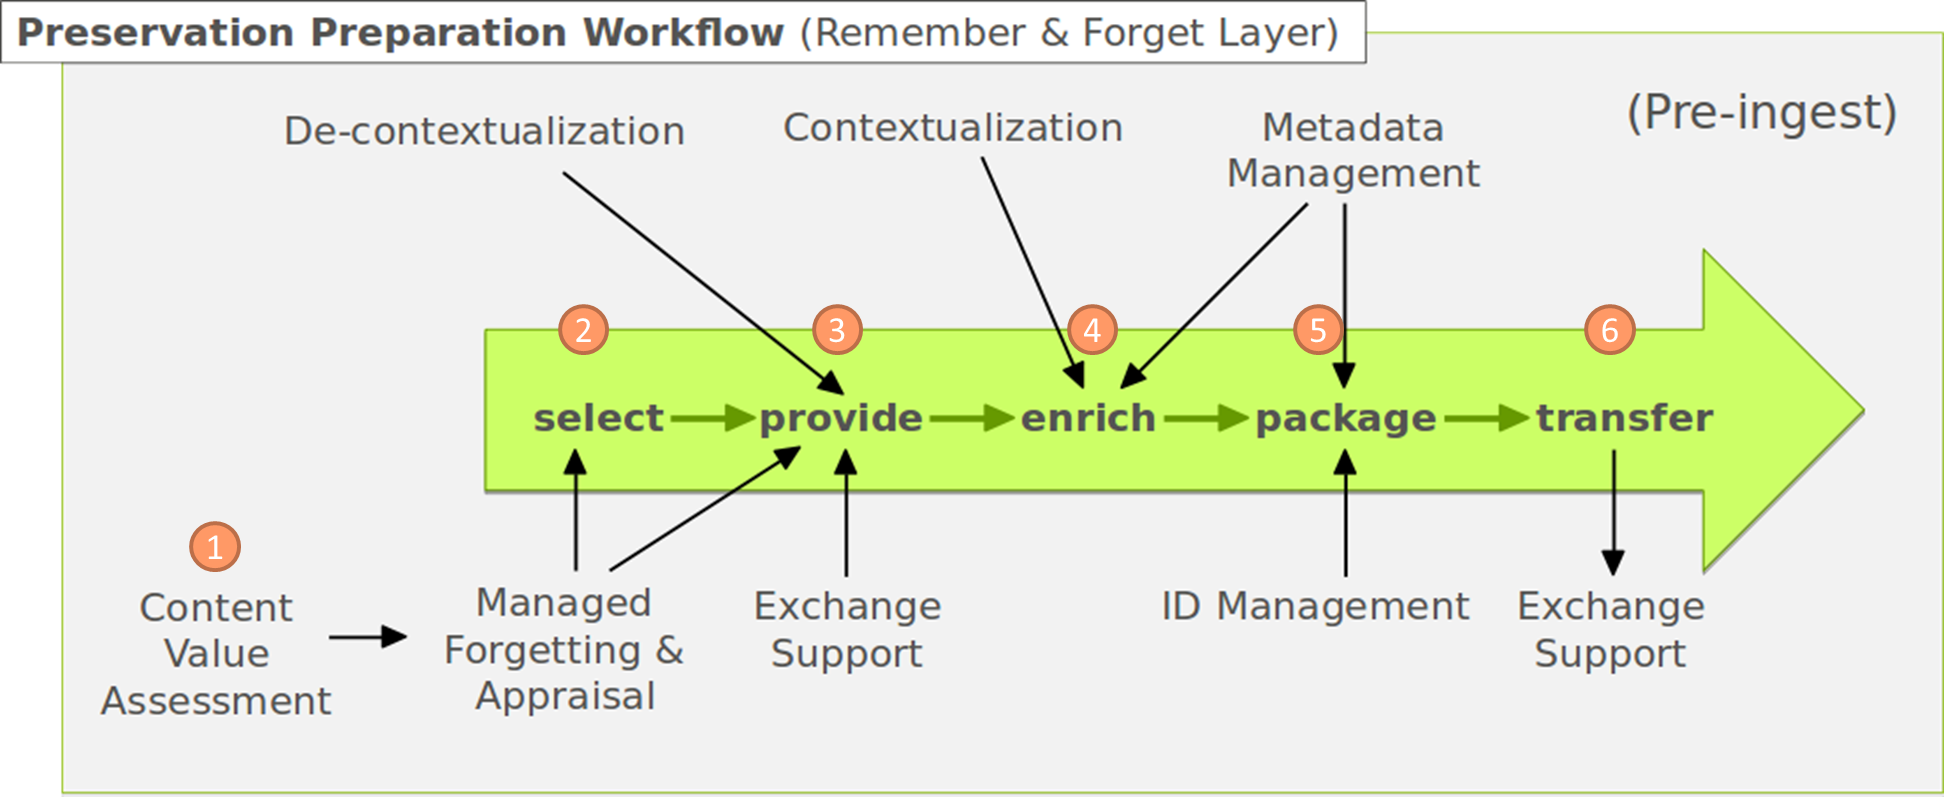 Preserve-or-Forget Preservation Preparation Workflow